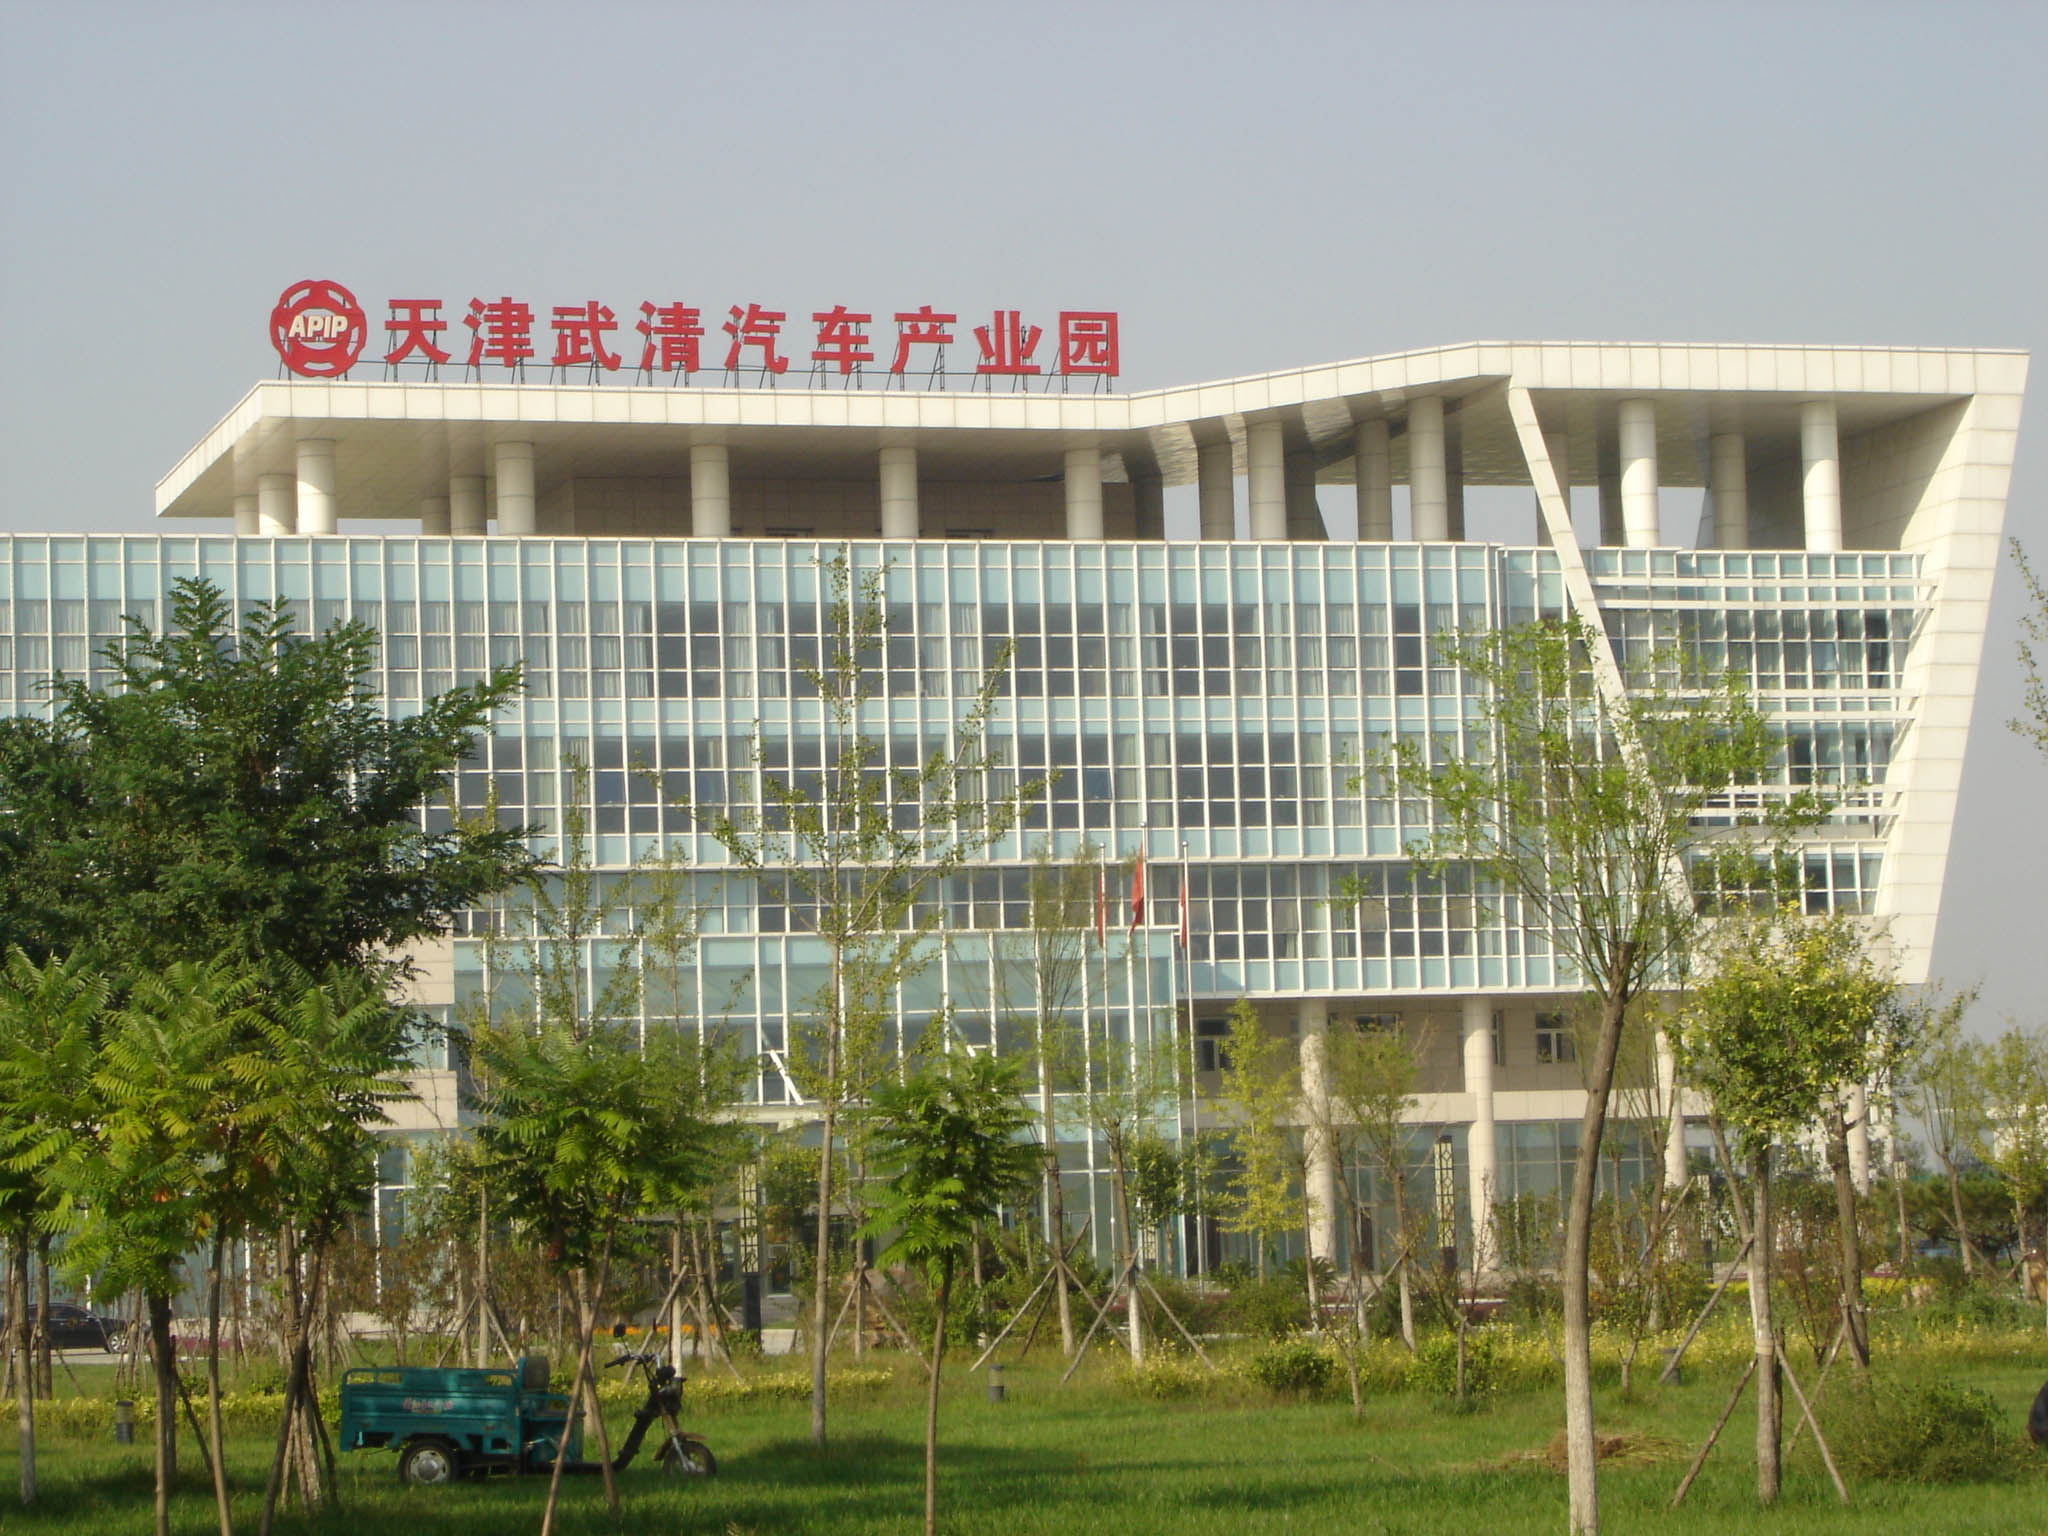 天津武清汽车产业园钢结构防火材料施工工程